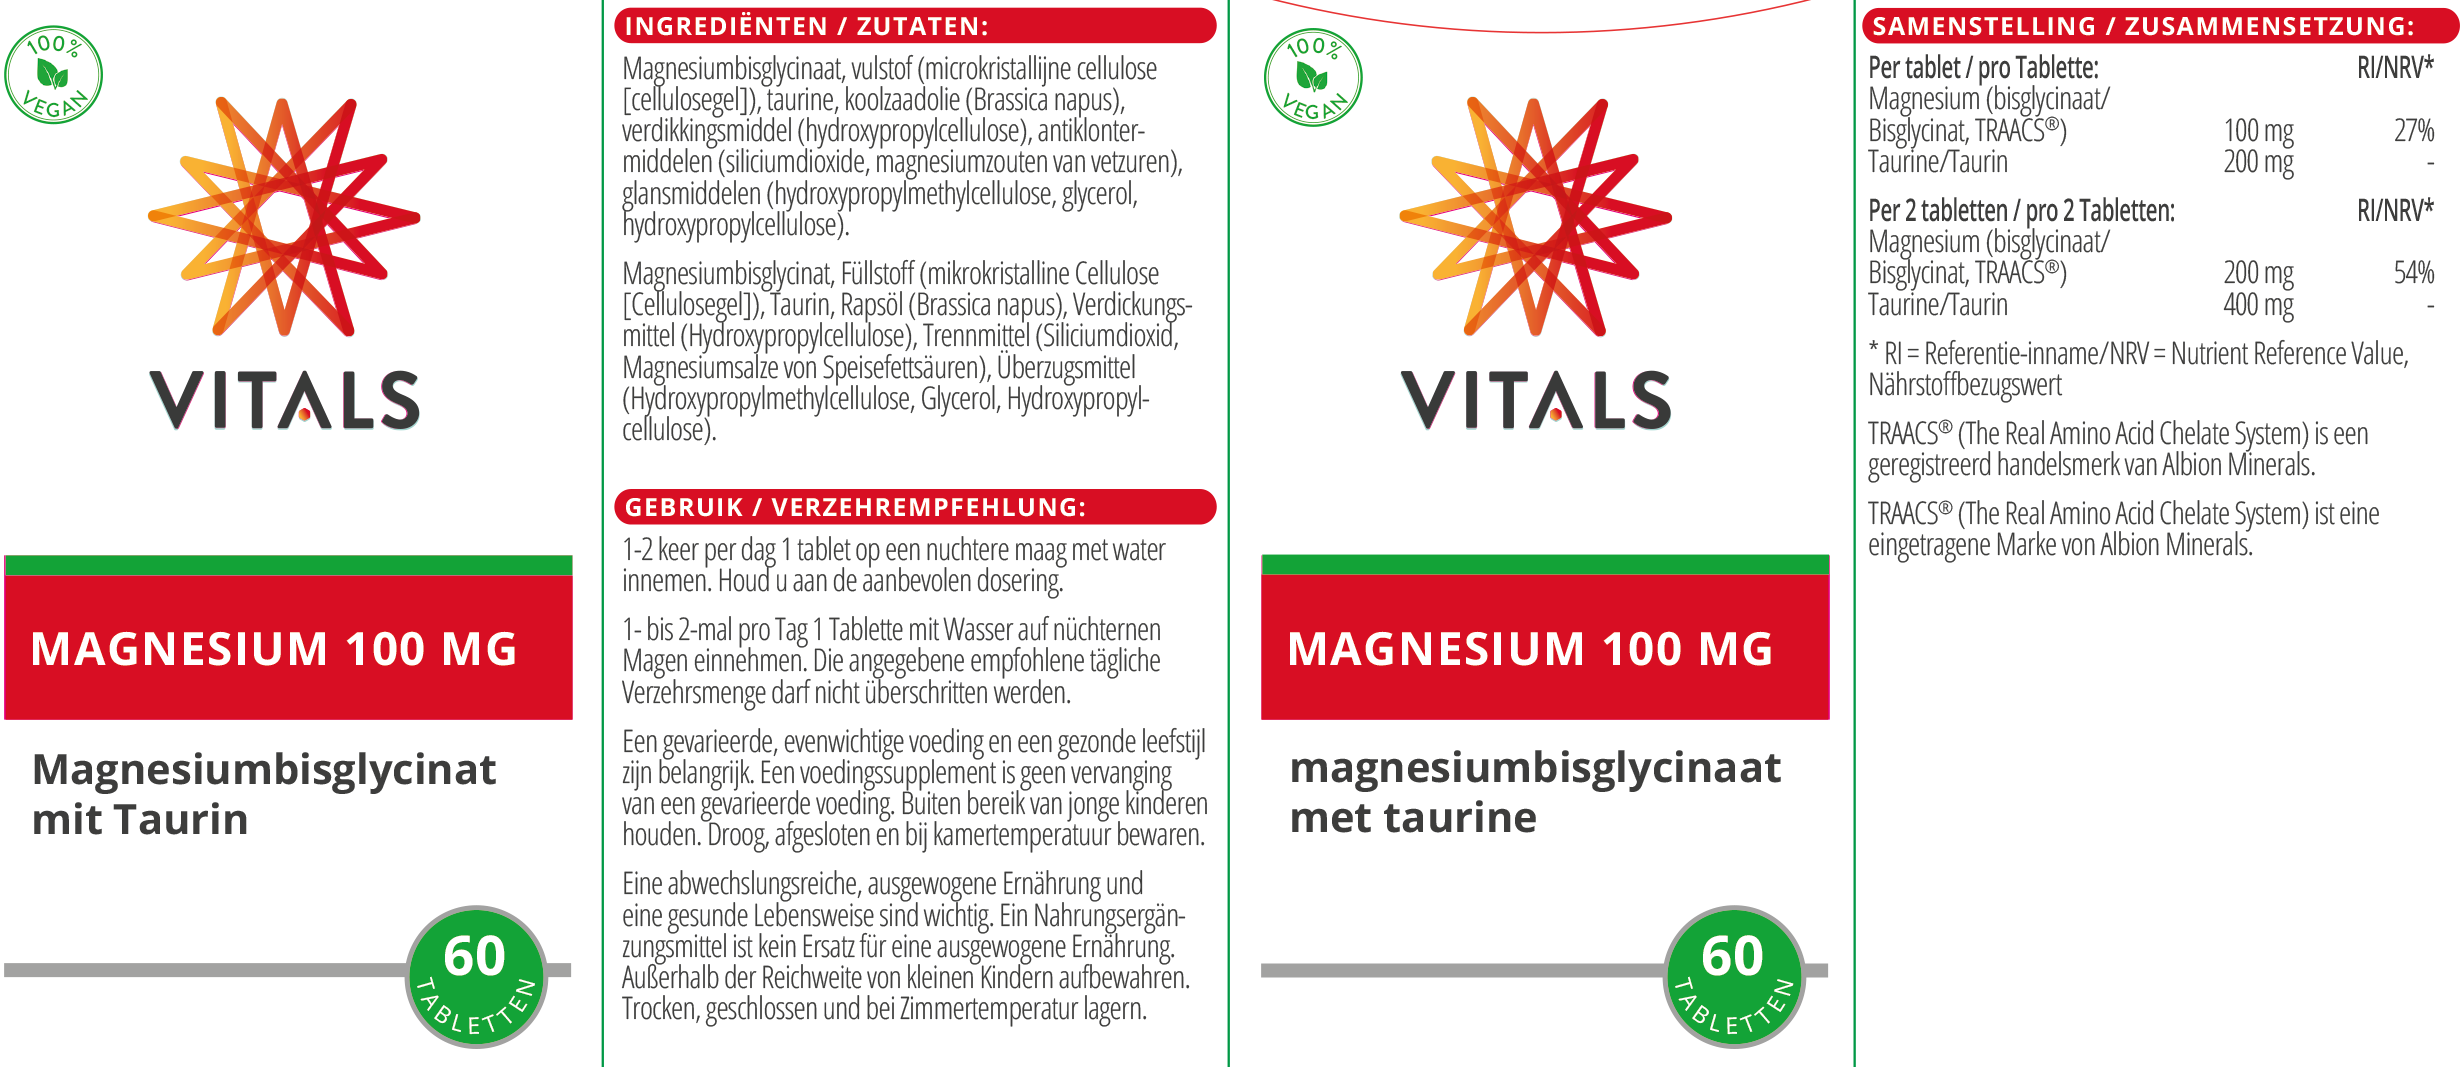 Magnesium (Bisglycinat) 100 mg